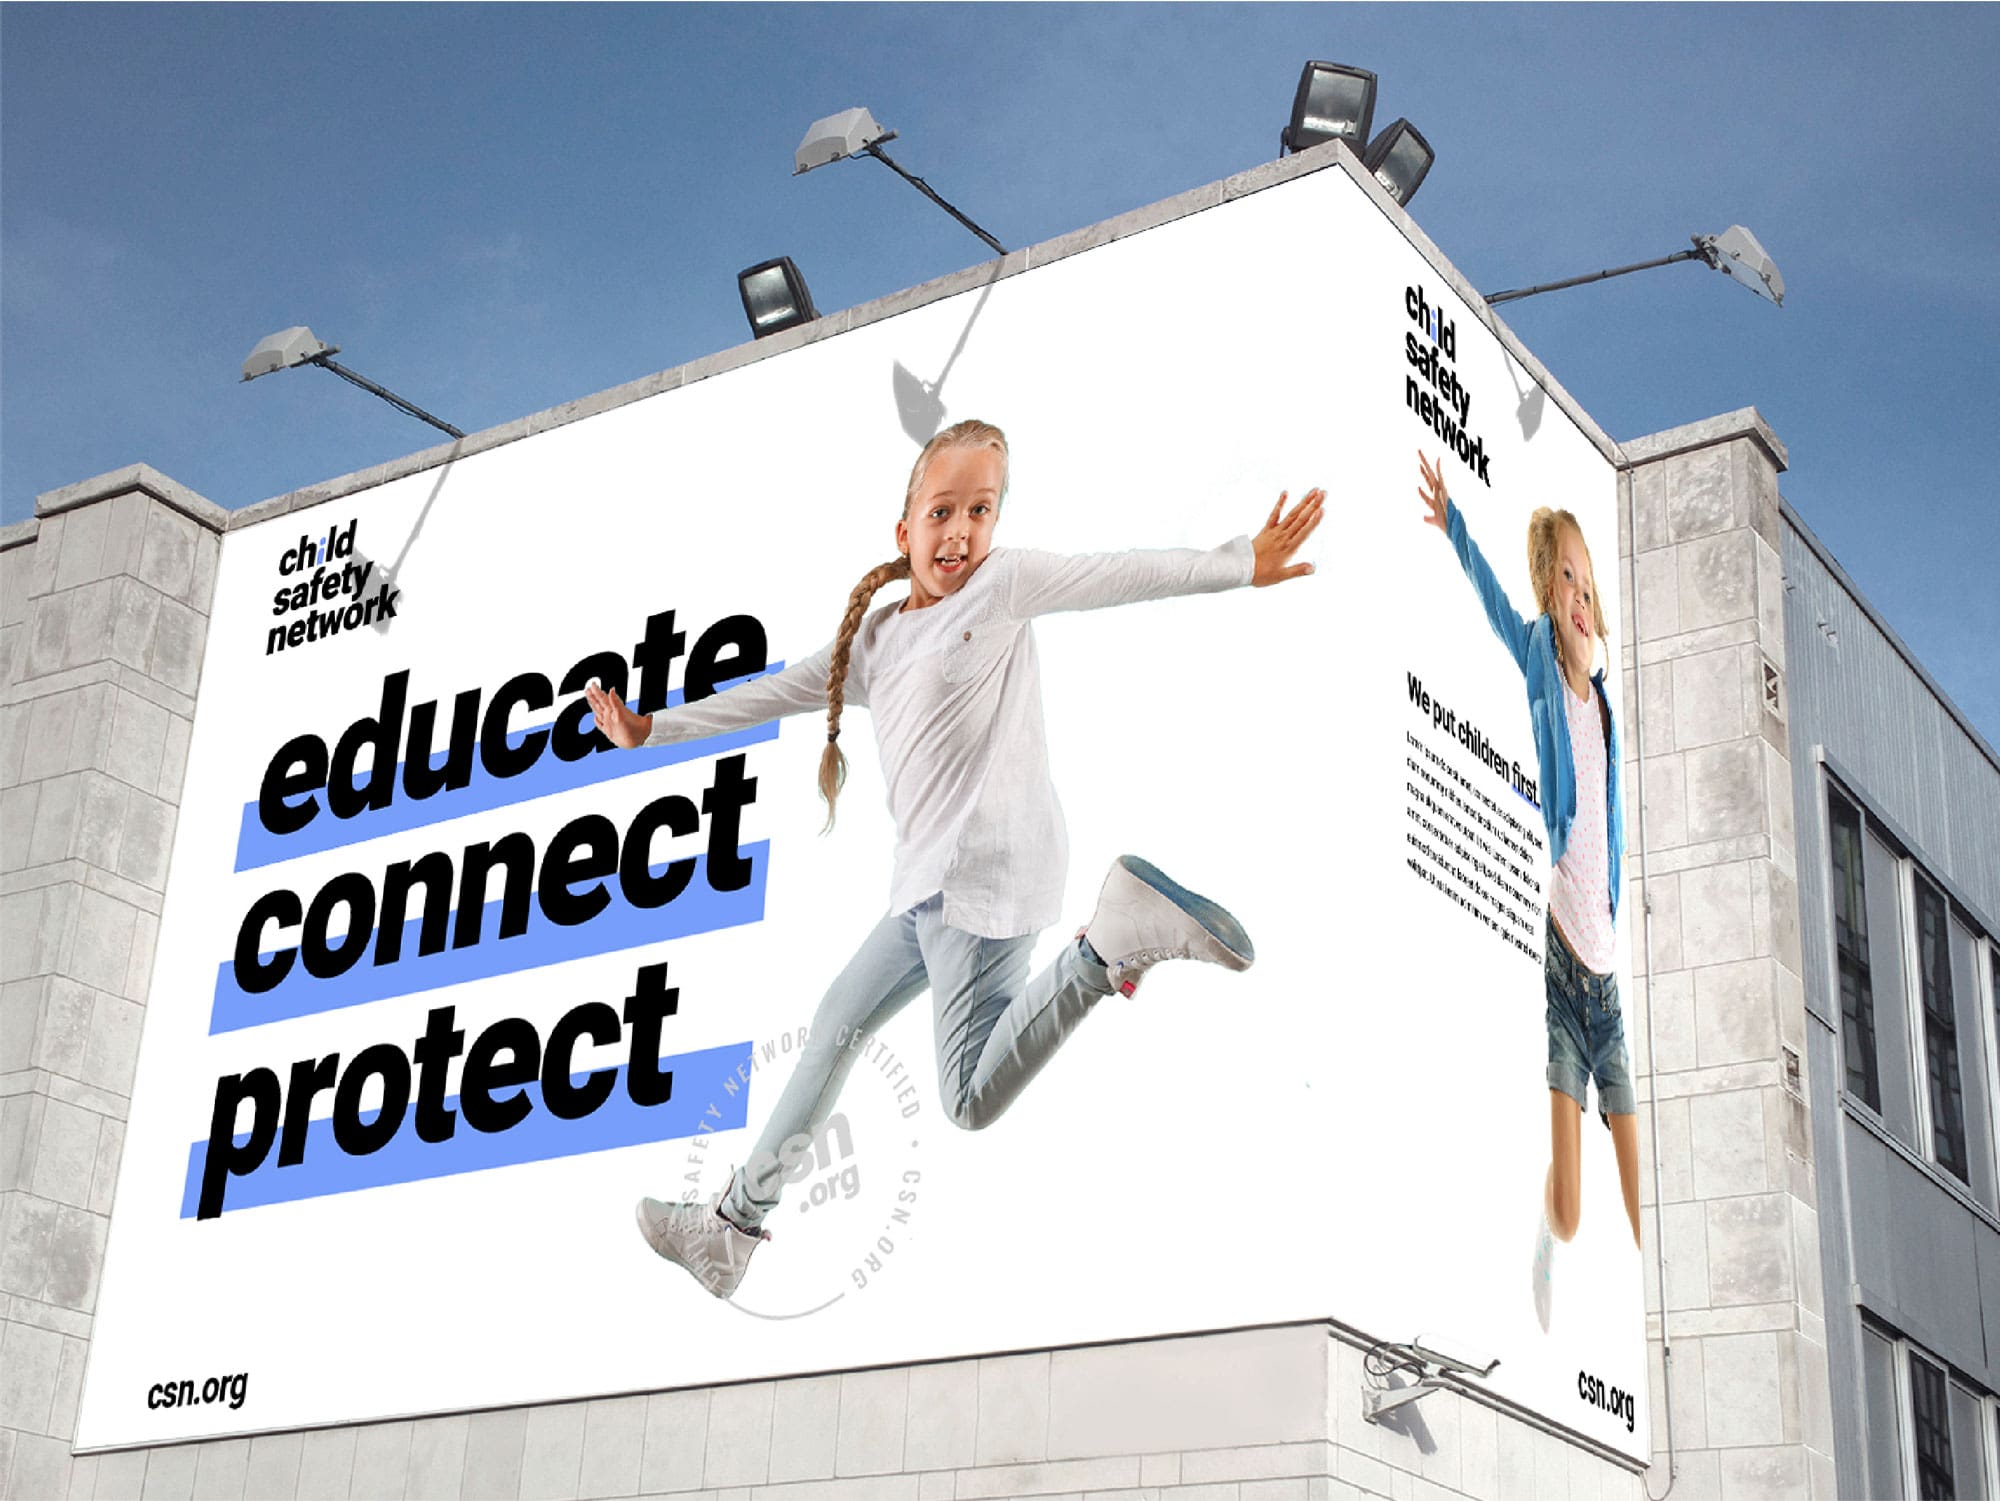 Child Safety Network on billboard